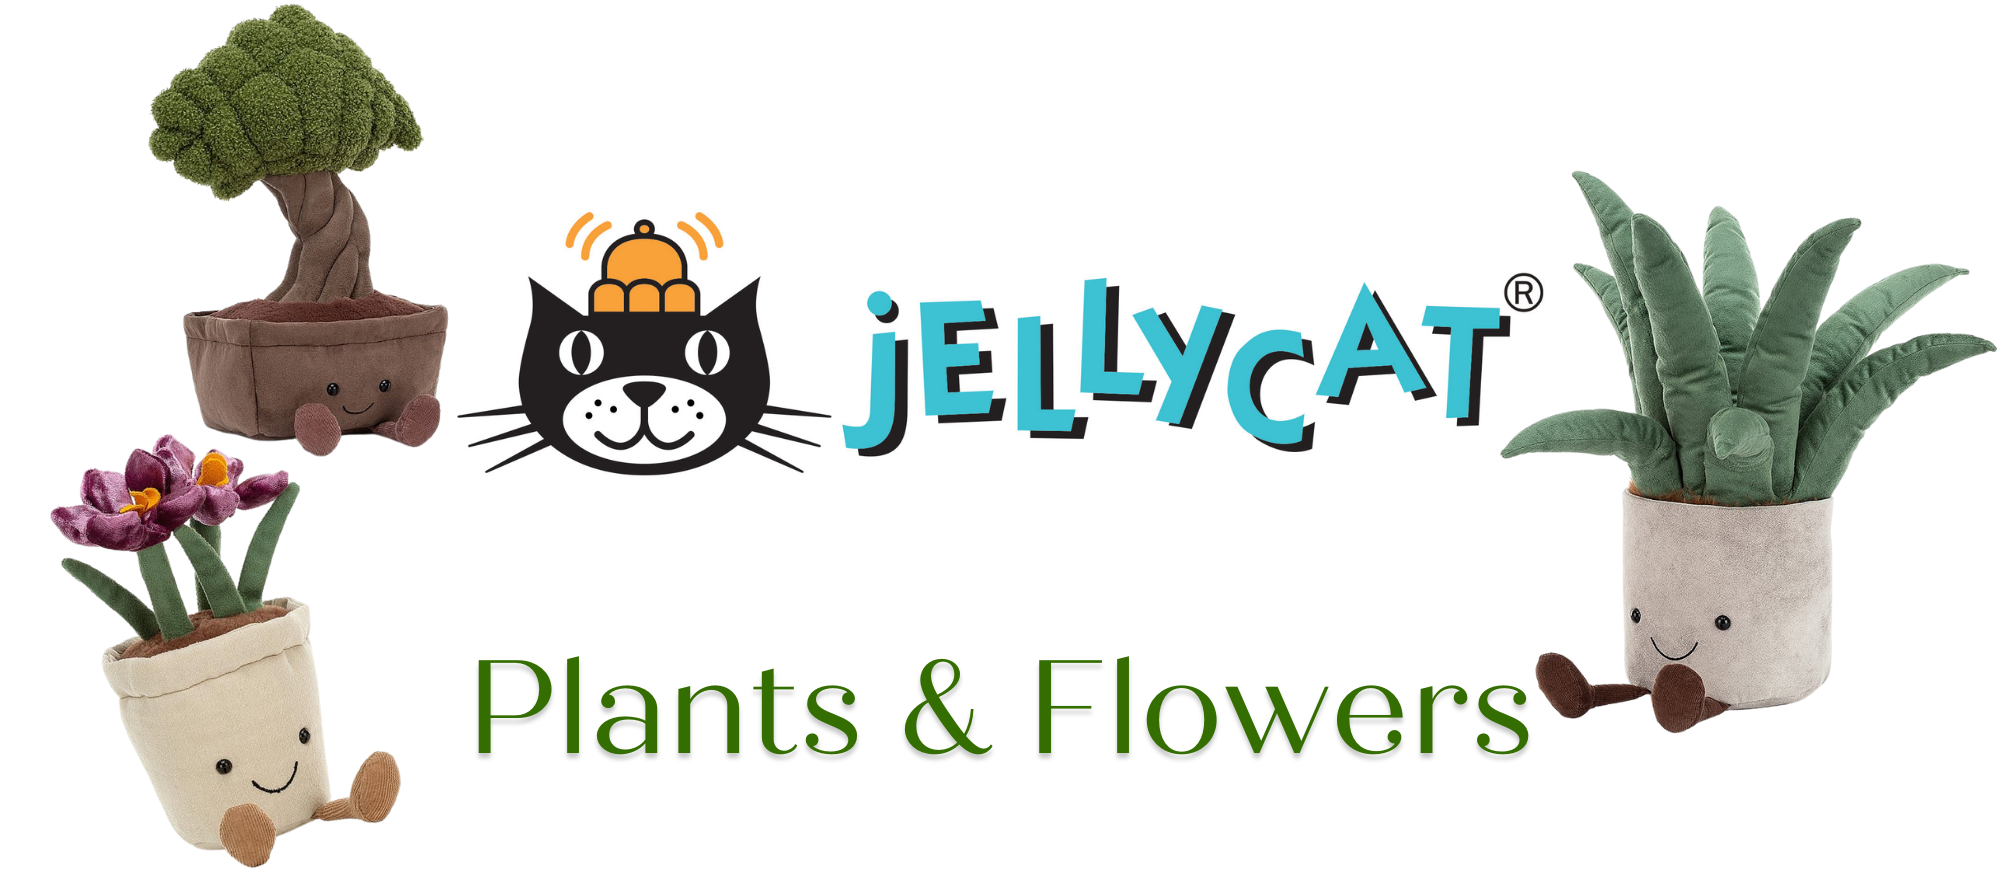 Jellycat Plants & Flowers